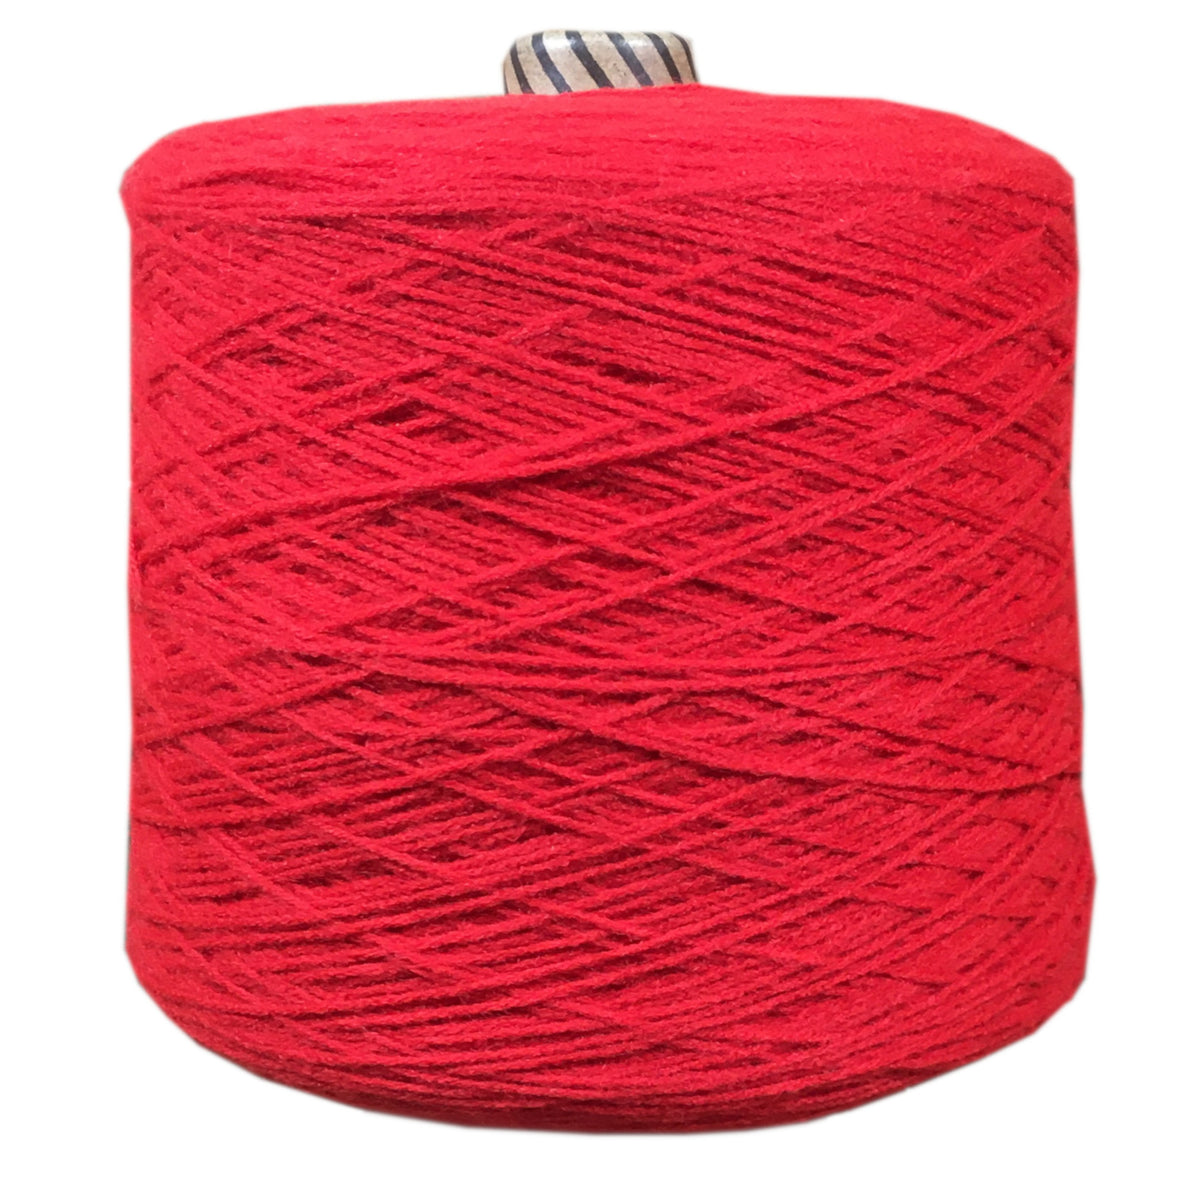 Machine Knitting Cone Yarn